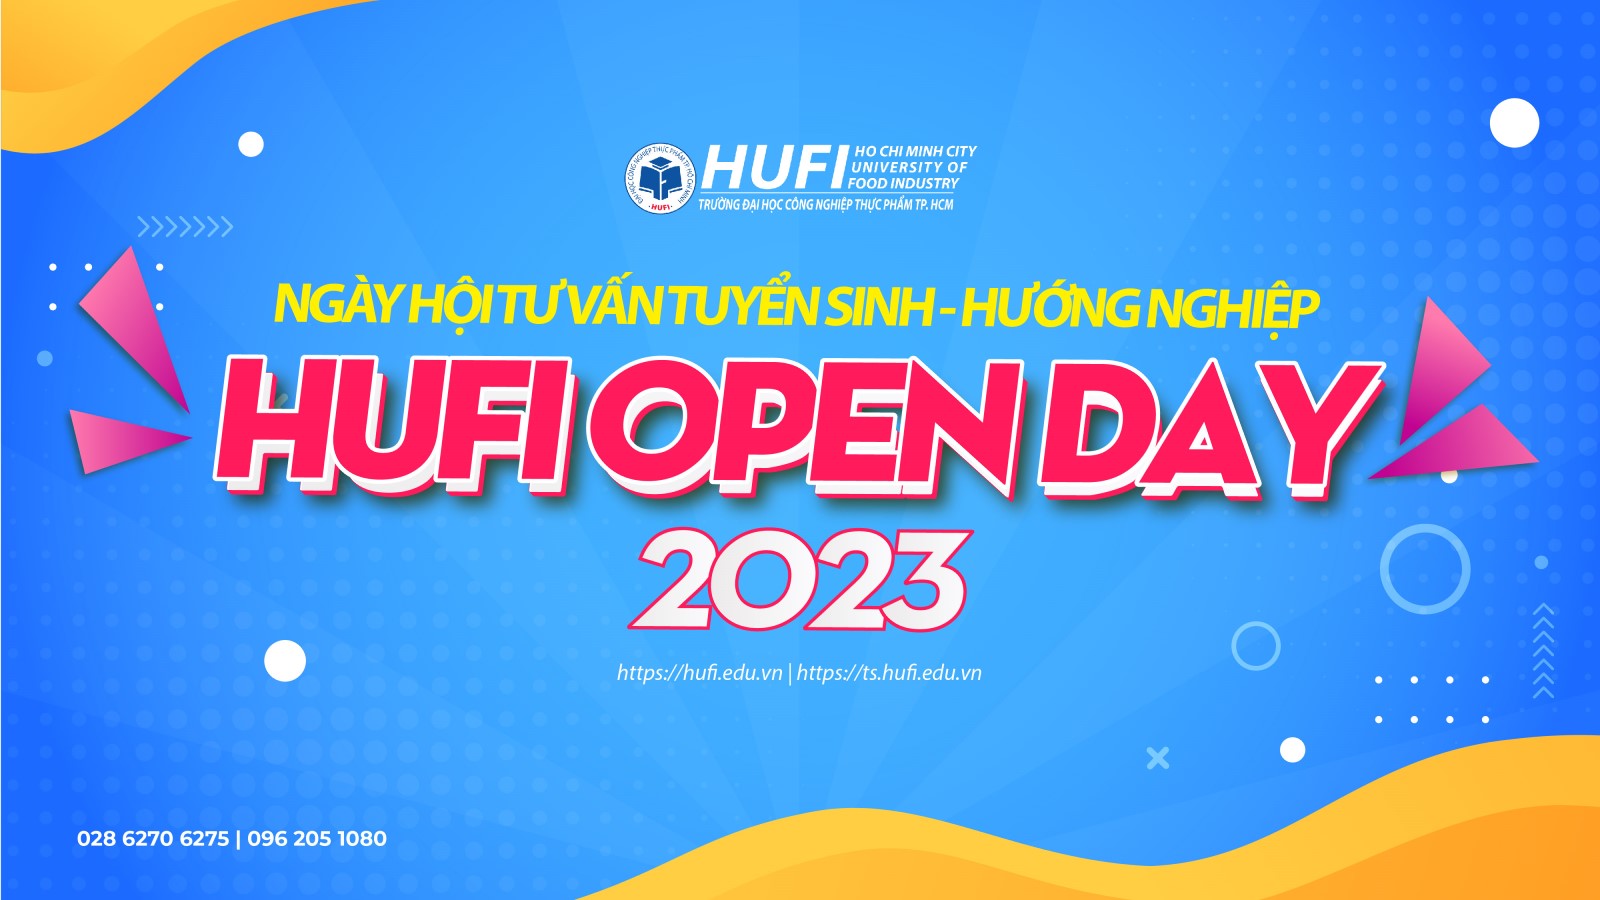 Tổ chức Ngày hội Tư vấn Tuyển sinh Hướng nghiệp - HUFI OPEN DAY 2023